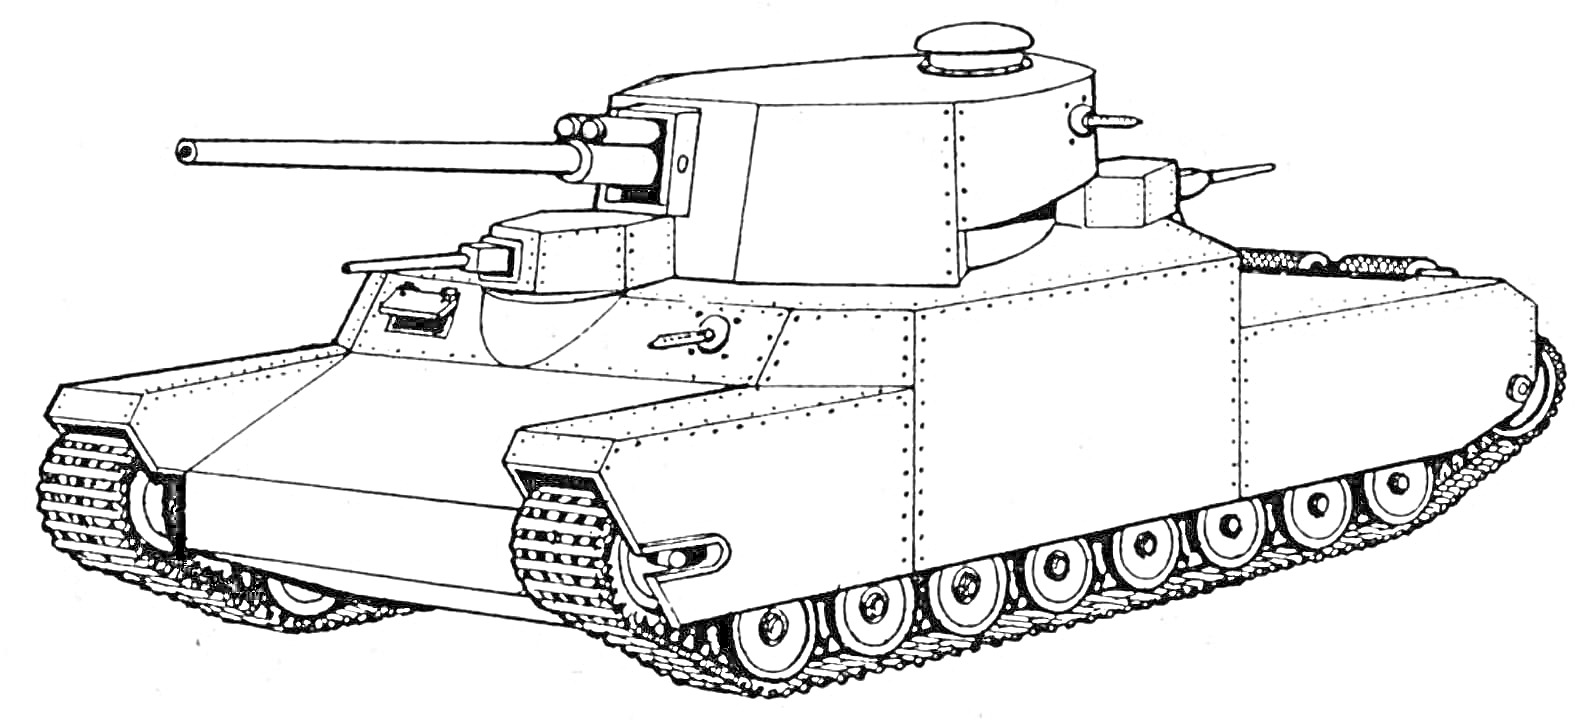 Легковой танк с длинной пушкой и бронированным корпусом, на гусеничном ходу, боковая проекция, вид слева